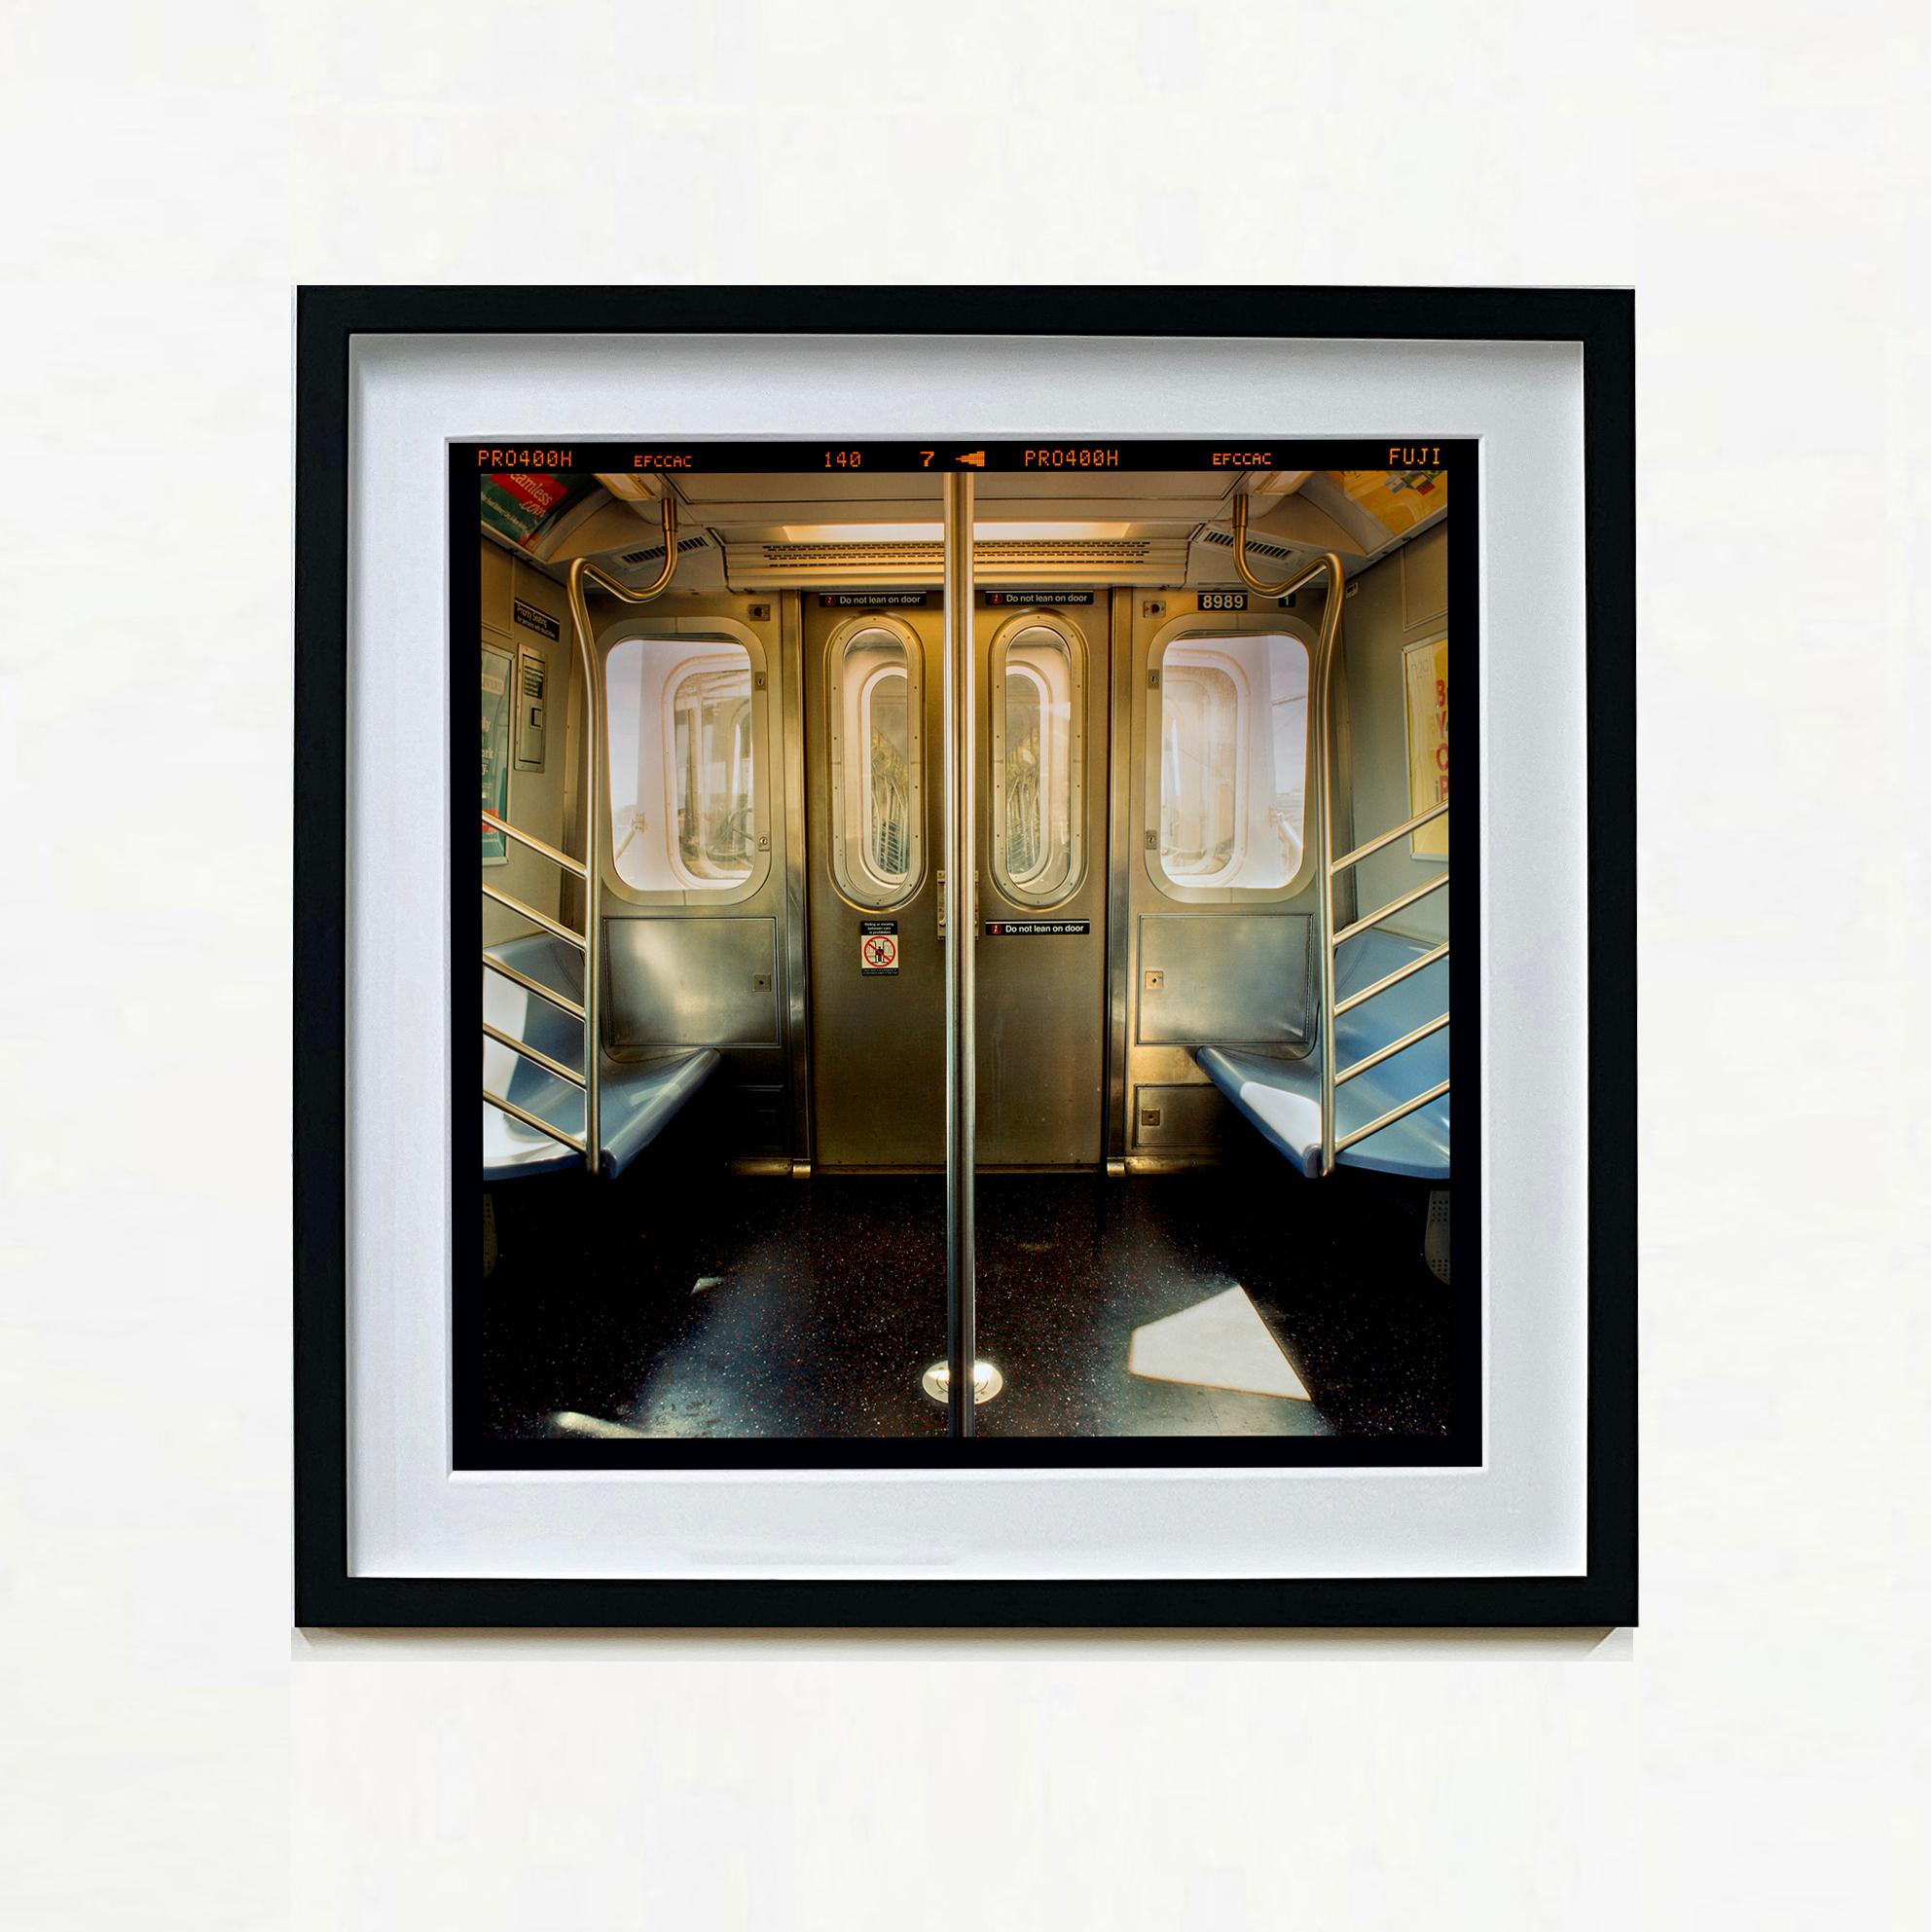 New York City Subway Car – amerikanische Interieur-Farbfotografie – Photograph von Richard Heeps